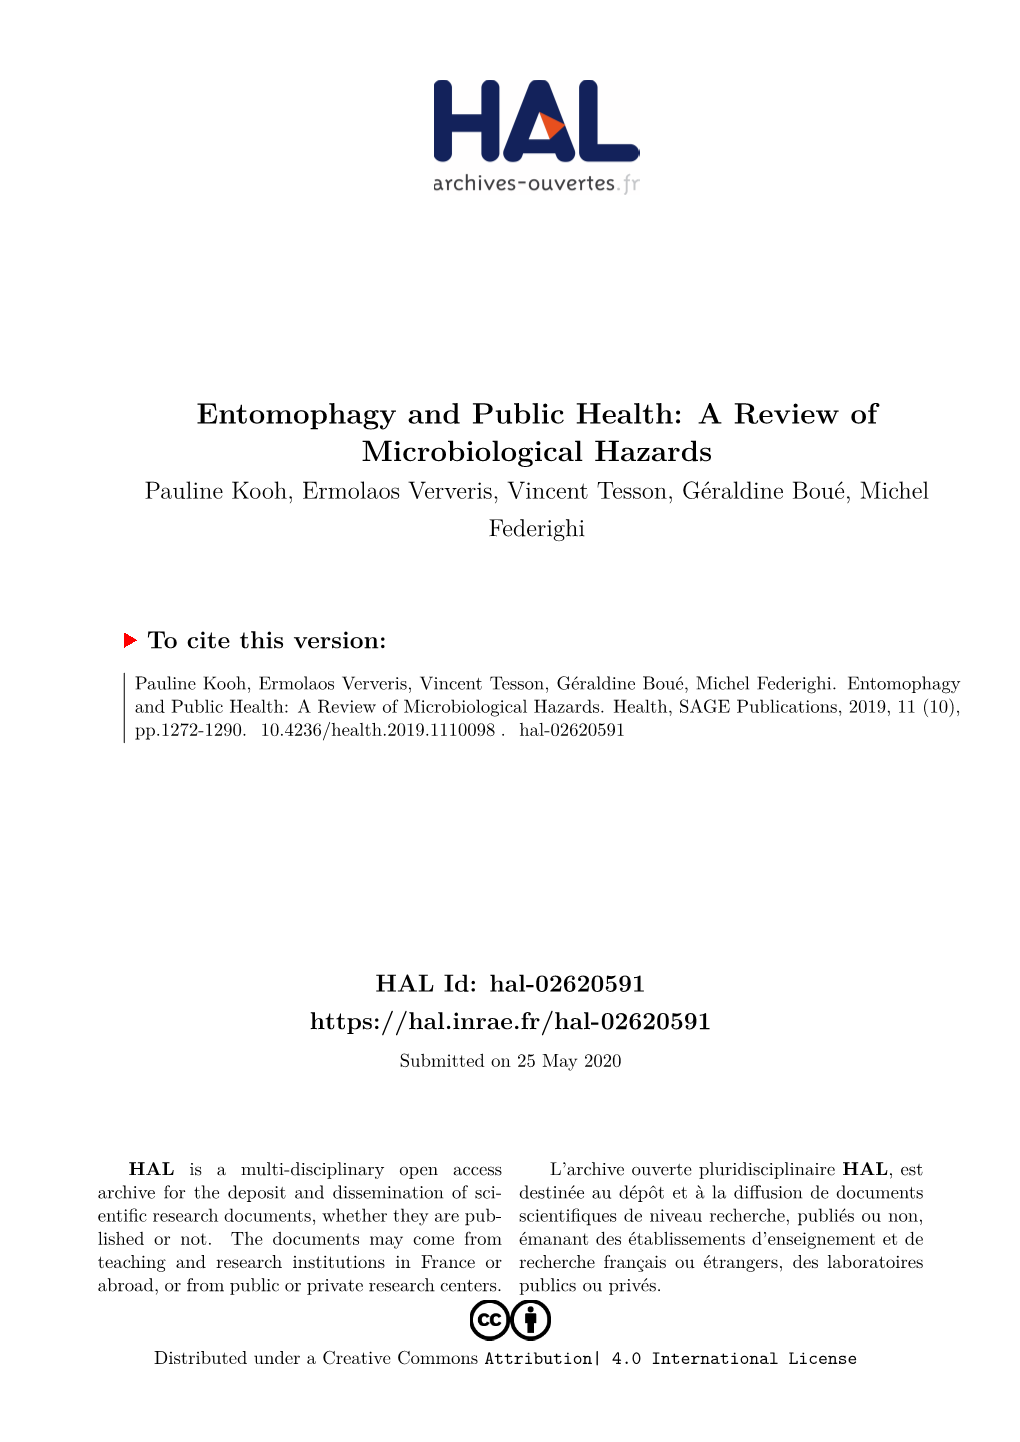 Entomophagy and Public Health: a Review of Microbiological Hazards Pauline Kooh, Ermolaos Ververis, Vincent Tesson, Géraldine Boué, Michel Federighi